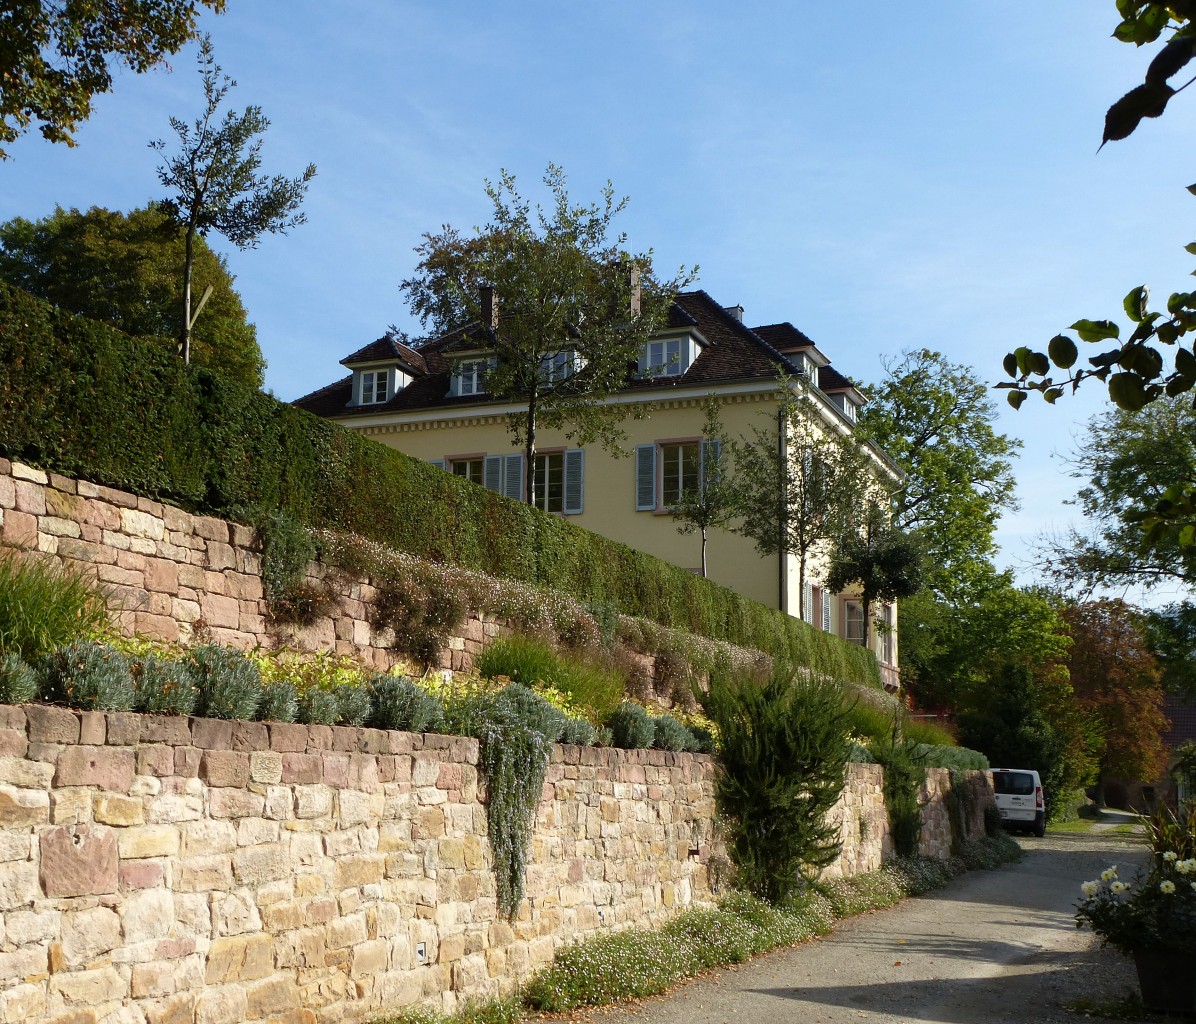 Bleichheim, das Schlo, befindet sich im Privatbesitz, Okt.2015